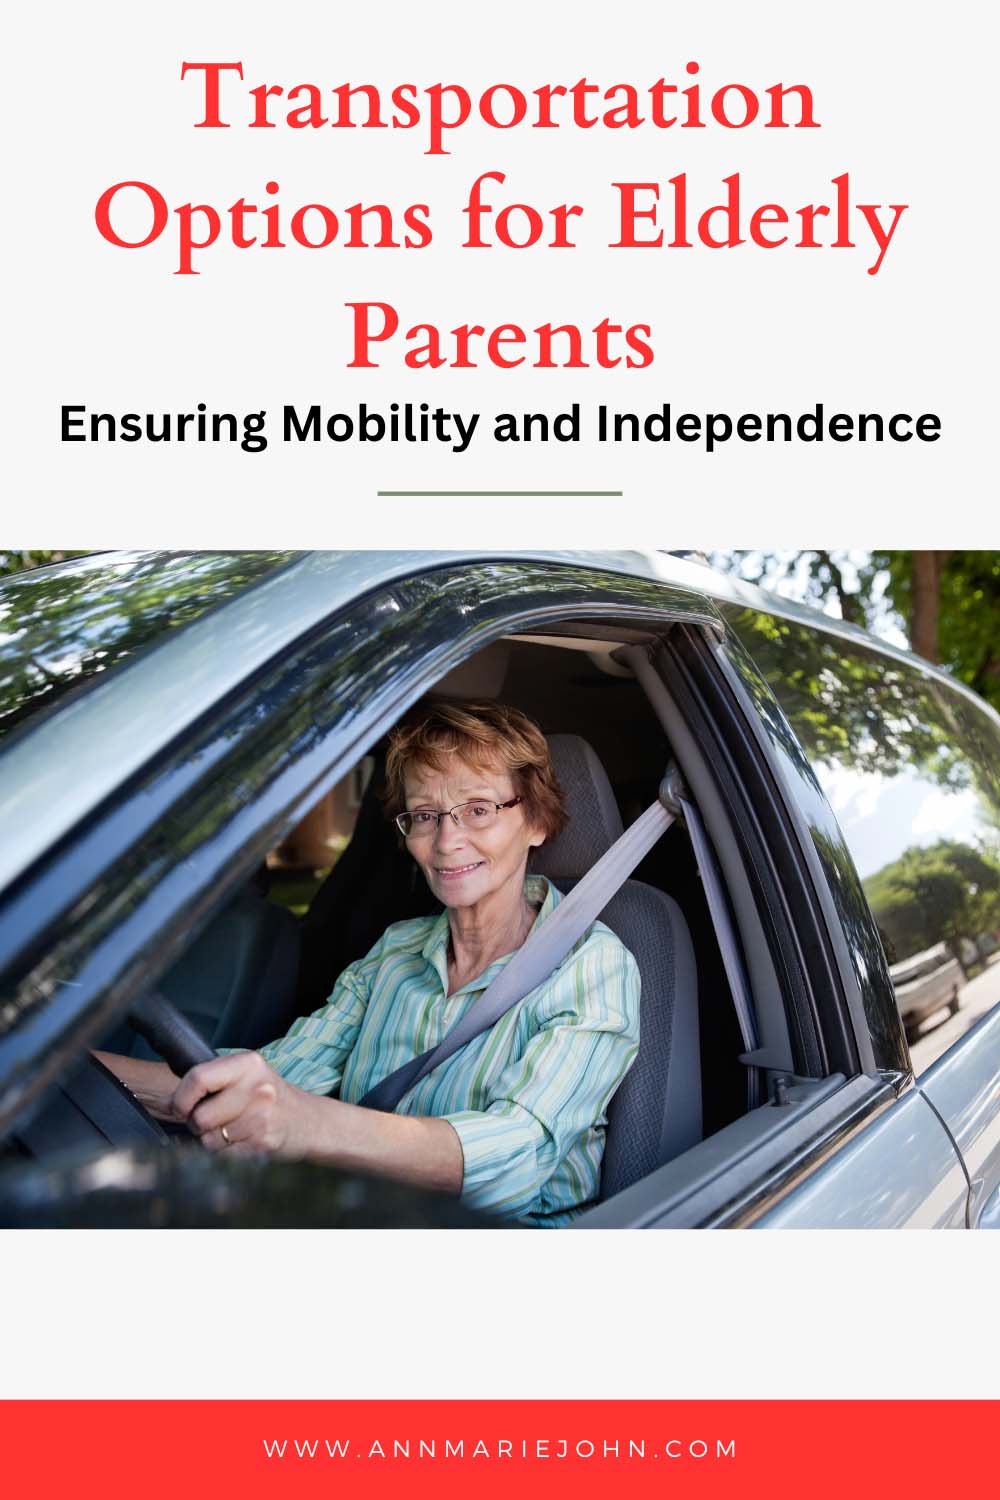 Transportation Options for Elderly Parents